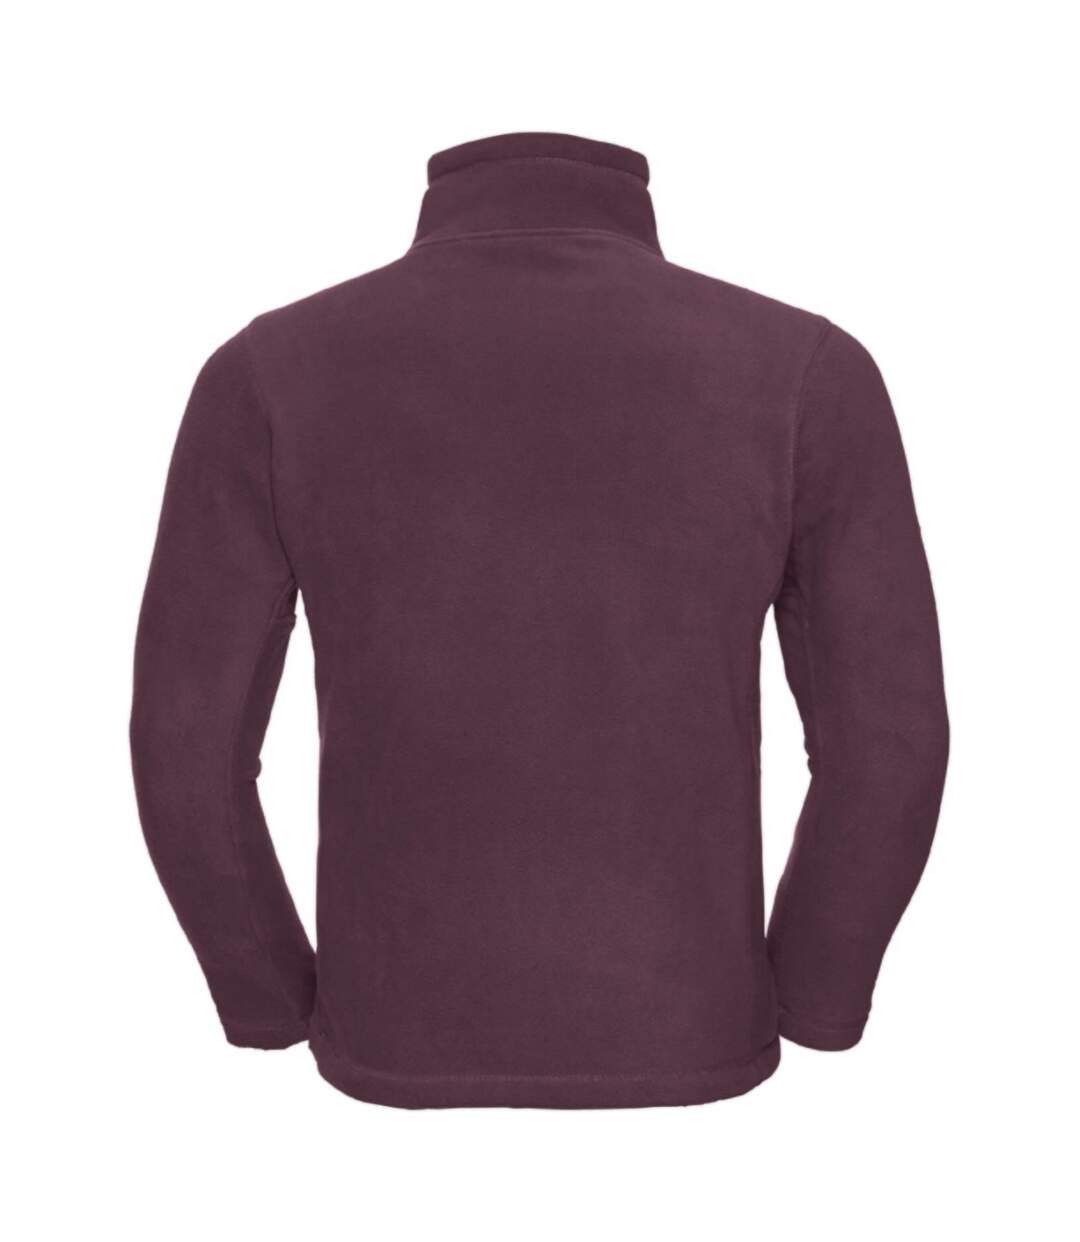 Russell Mens 1/4 Zip Outdoor Fleece Top (Burgundy) - UTBC1438